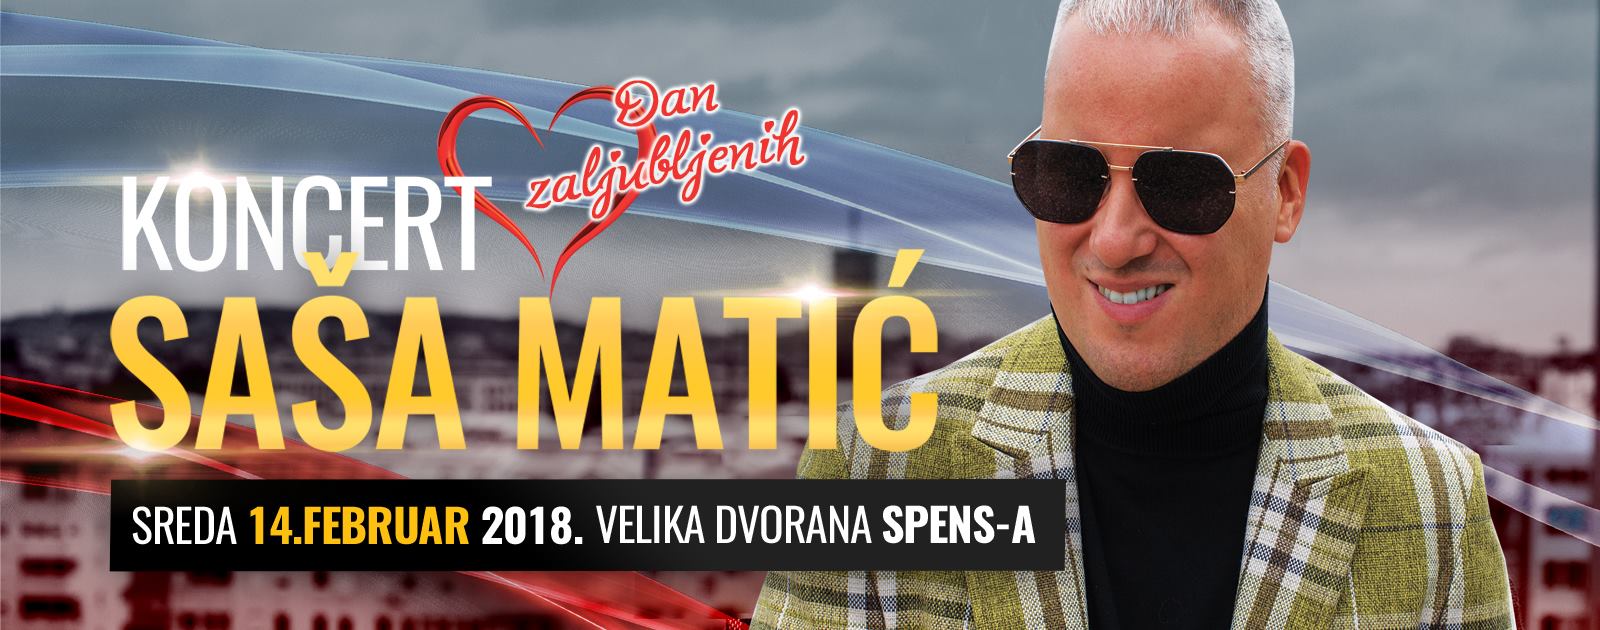 Saša Matić 14.02.2018. SPENS